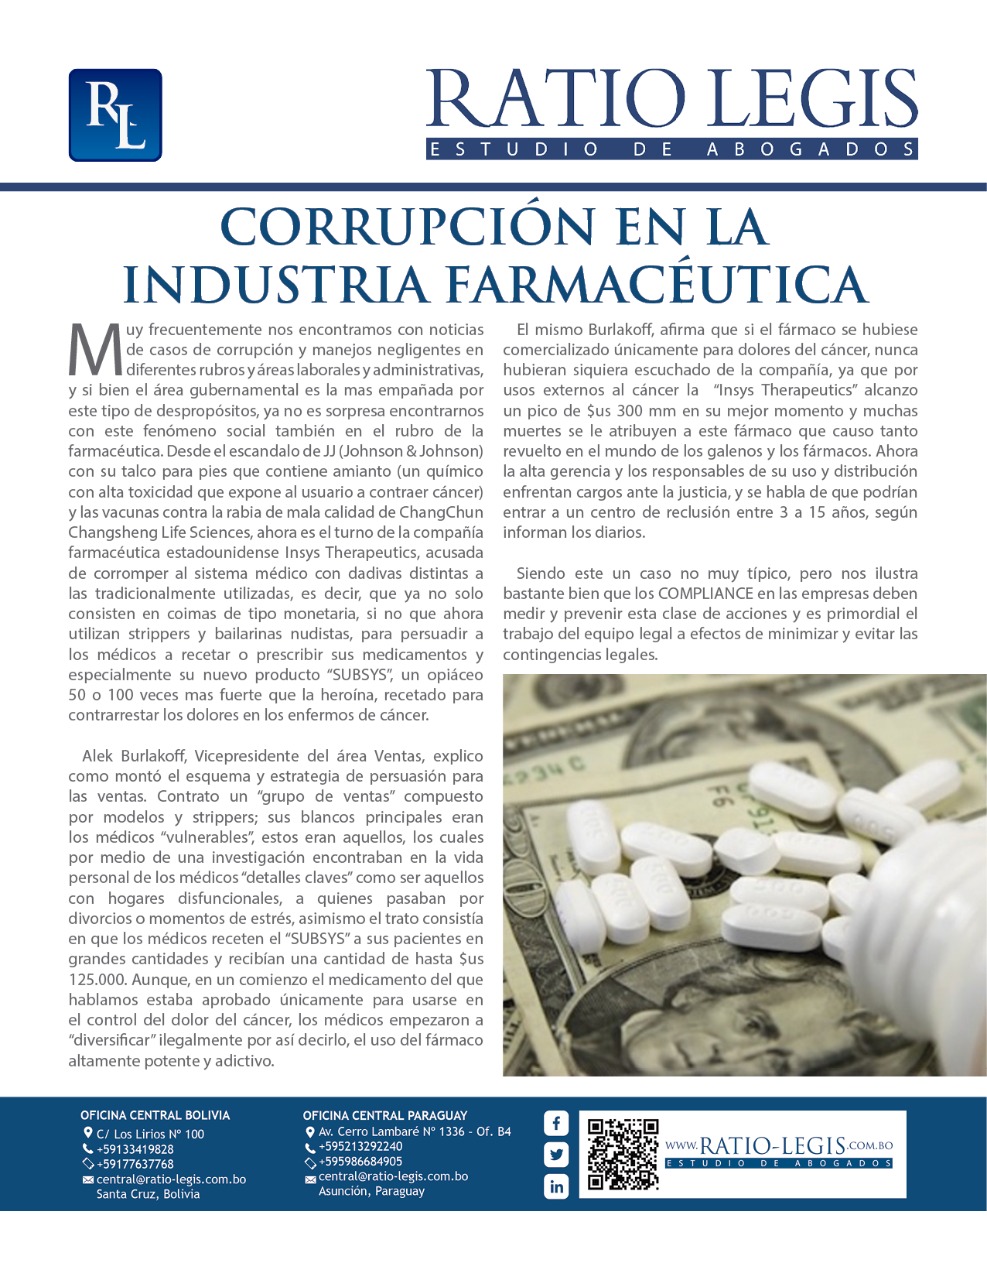 (Español) Corrupción en la Industria Farmacéutica